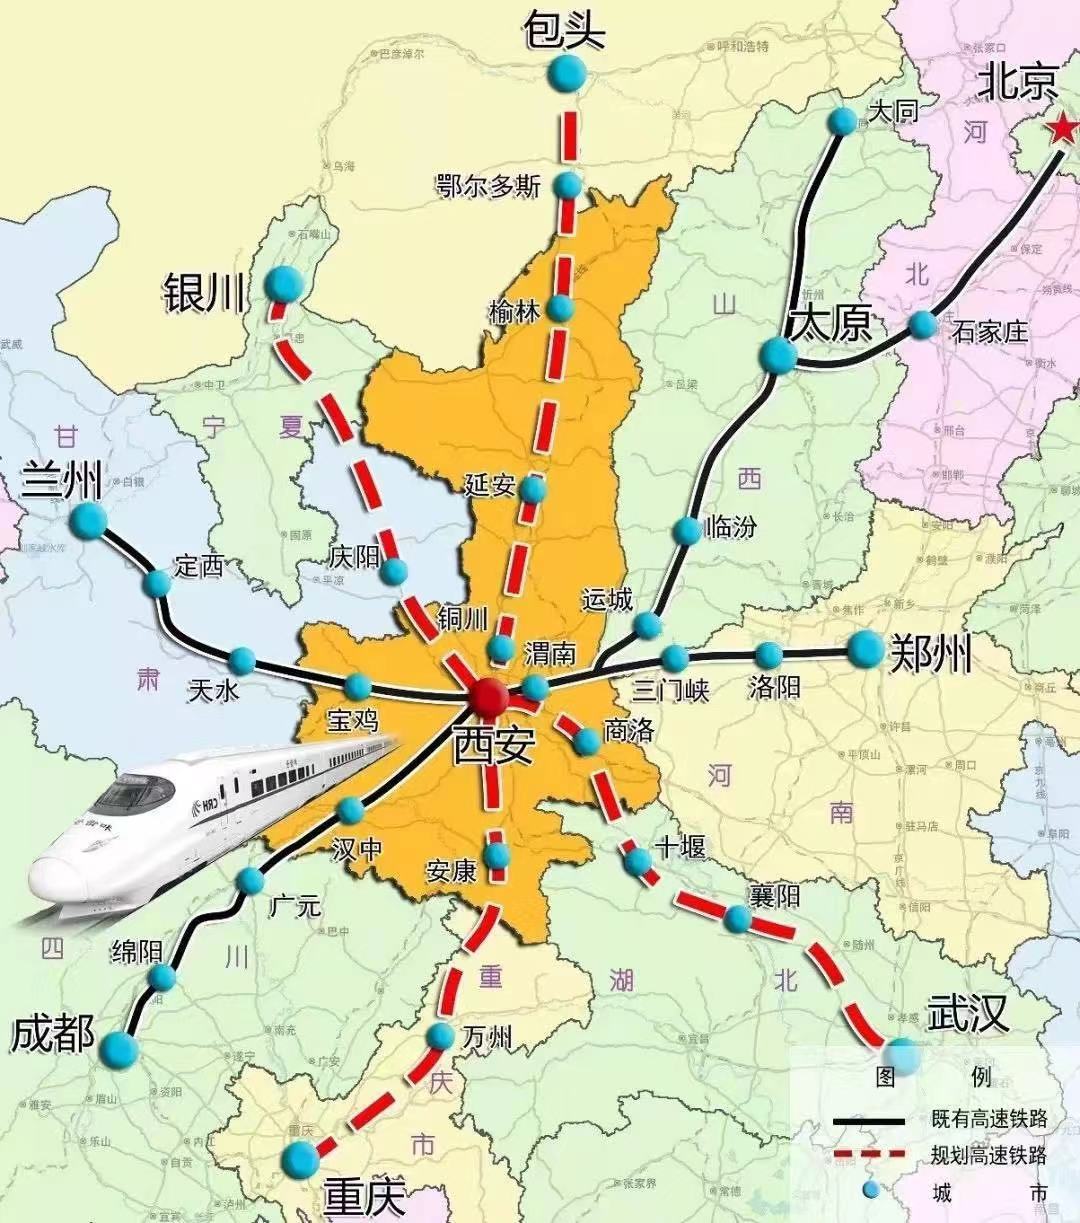 近日,《西安市十四五综合交通运输发展规划》提出,到2025年,米字